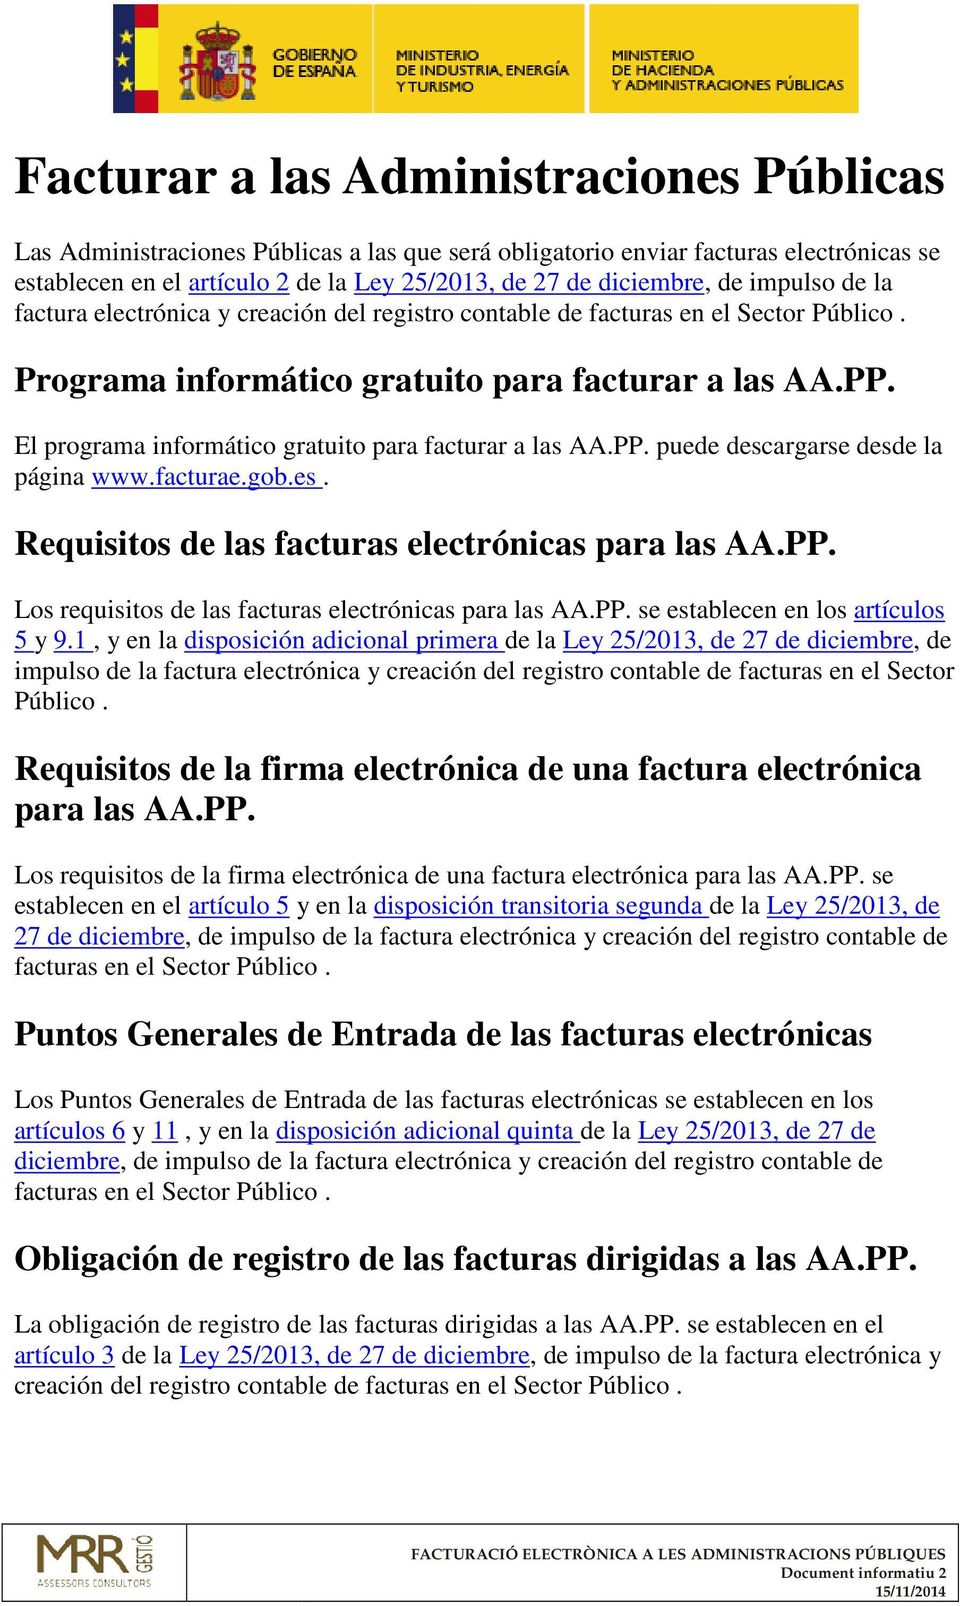 El programa informático gratuito para facturar a las AA.PP. puede descargarse desde la página www.facturae.gob.es. Requisitos de las facturas electrónicas para las AA.PP. Los requisitos de las facturas electrónicas para las AA.